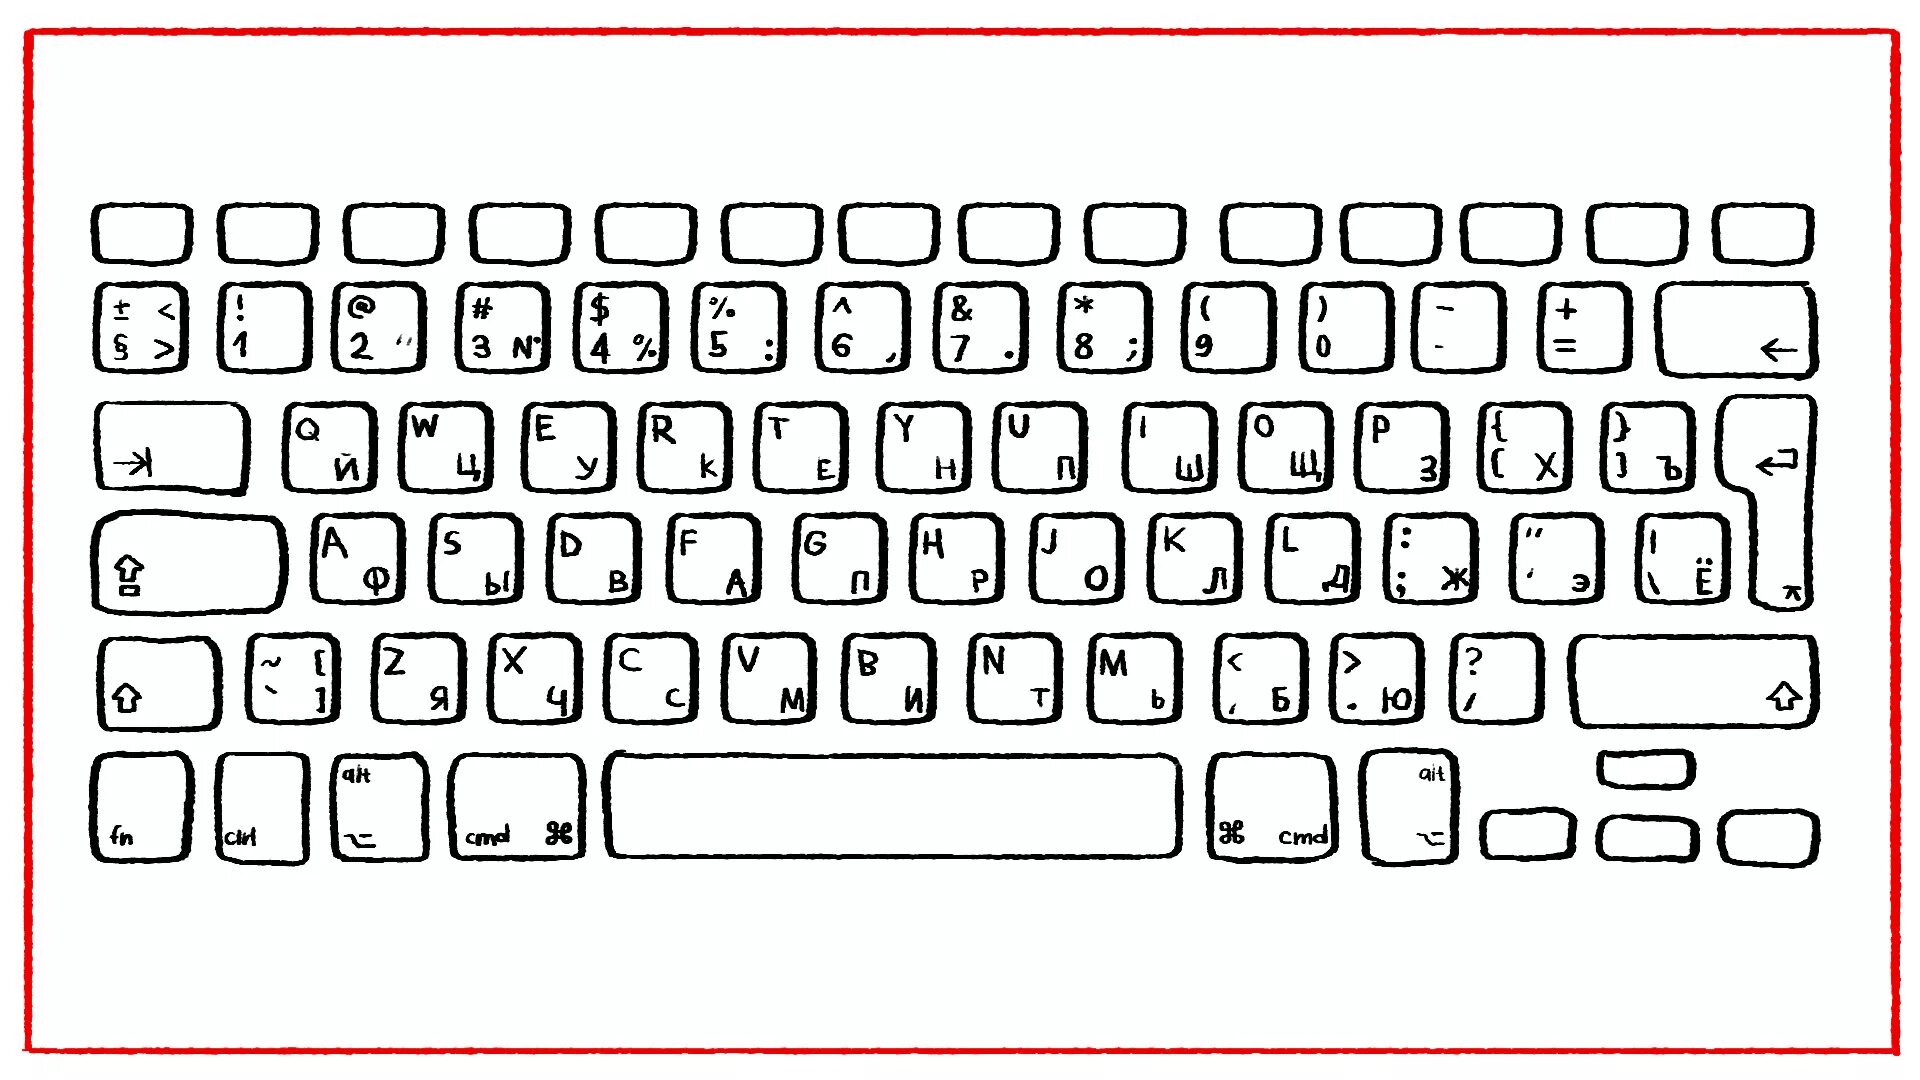 Компьютерная клавиатура раскладка русская и английская. Распечатка клавиатуры компьютера. Клавиатура для раскрашивания. Клавиатура компьютера раскраска. Большая раскладка